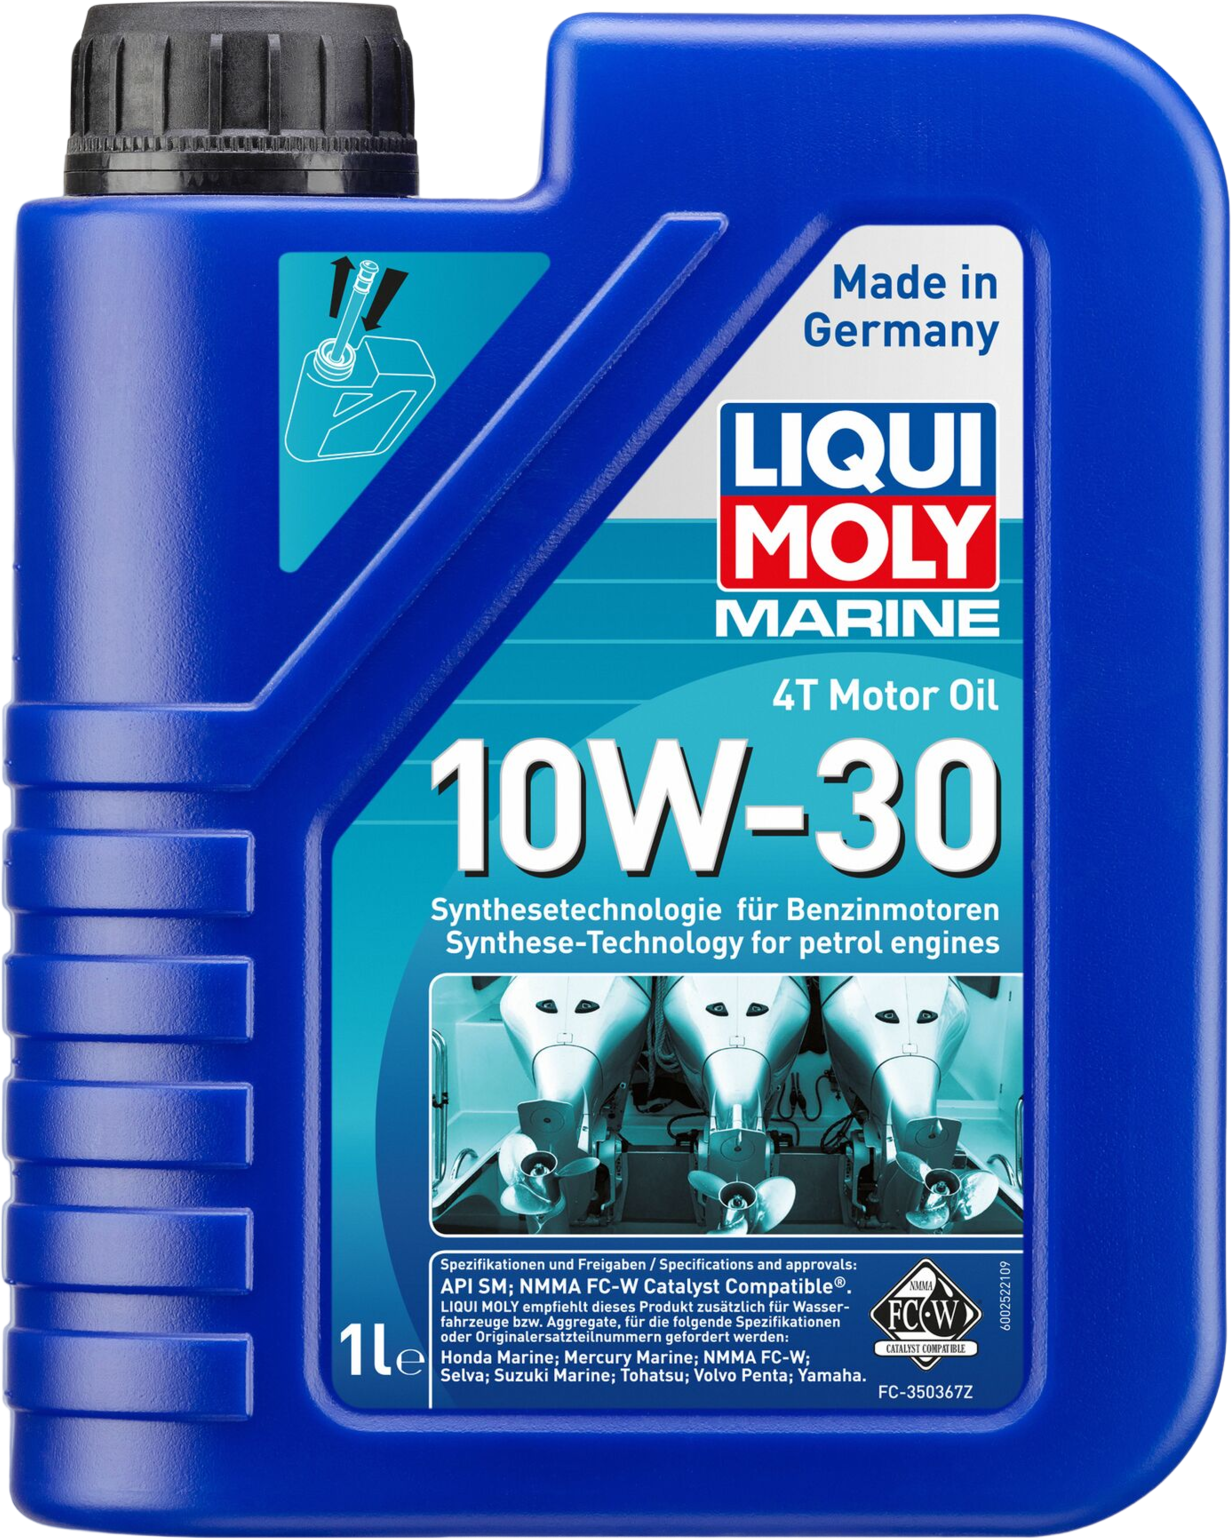 Liqui Moly Marine 4T Motor Oil 10W-30, 6 x 1 lt detail 2